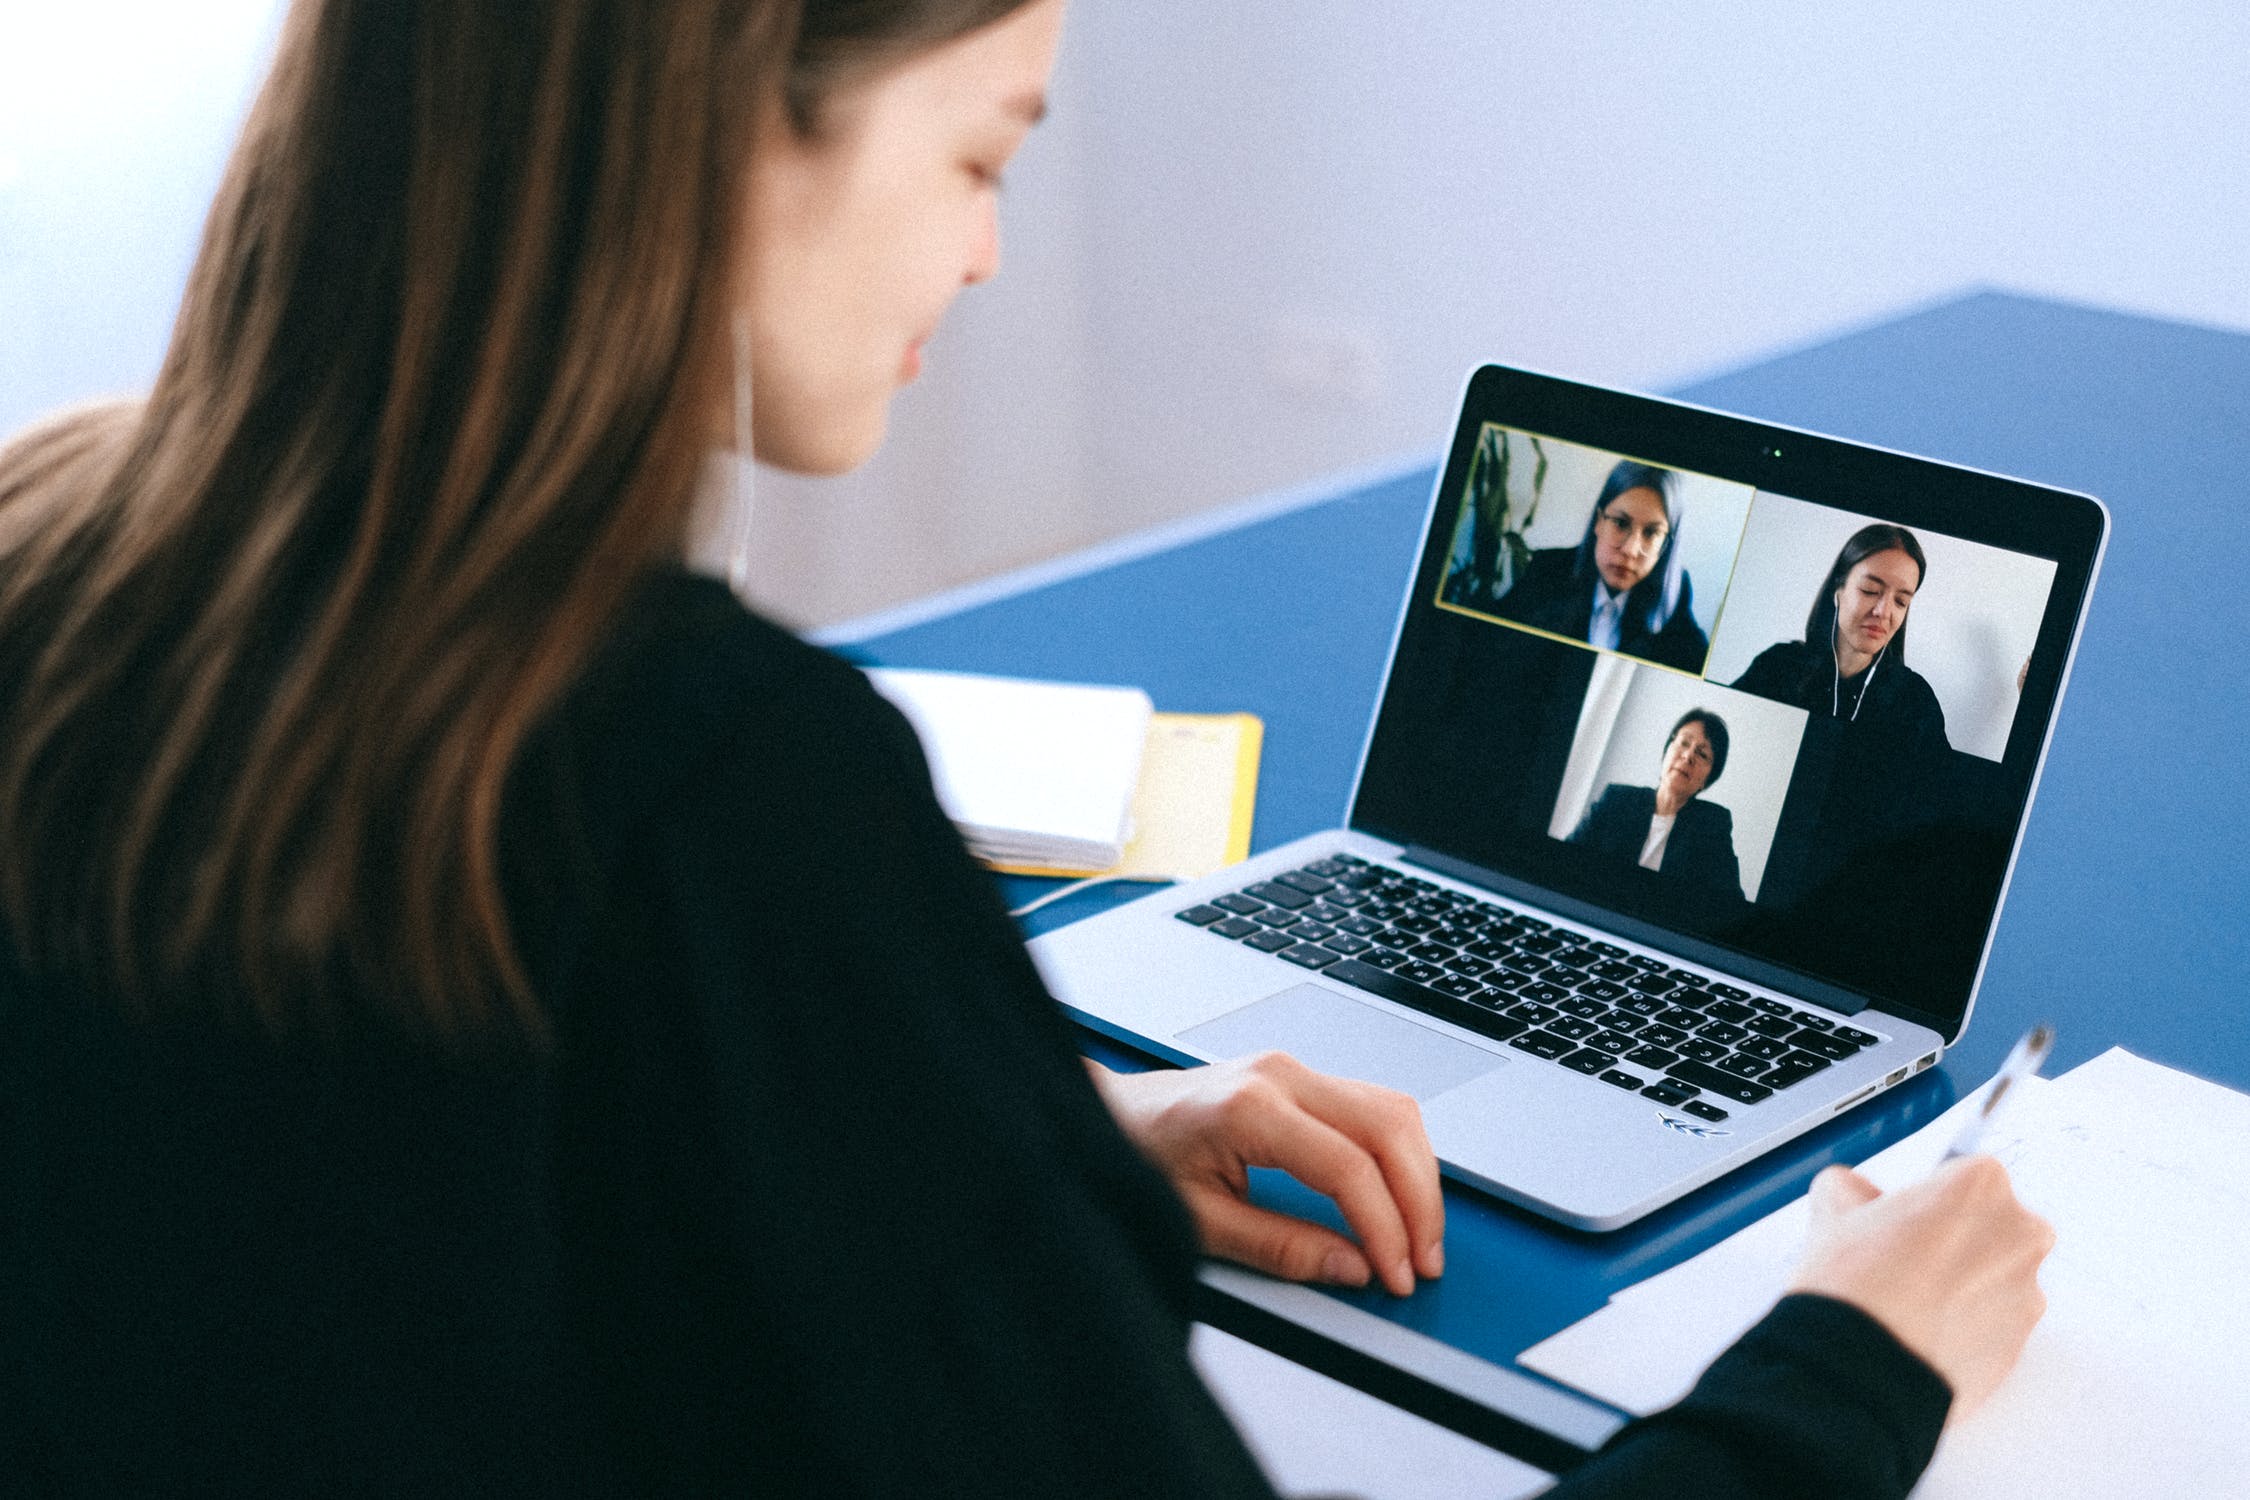 Effective virtual meetings